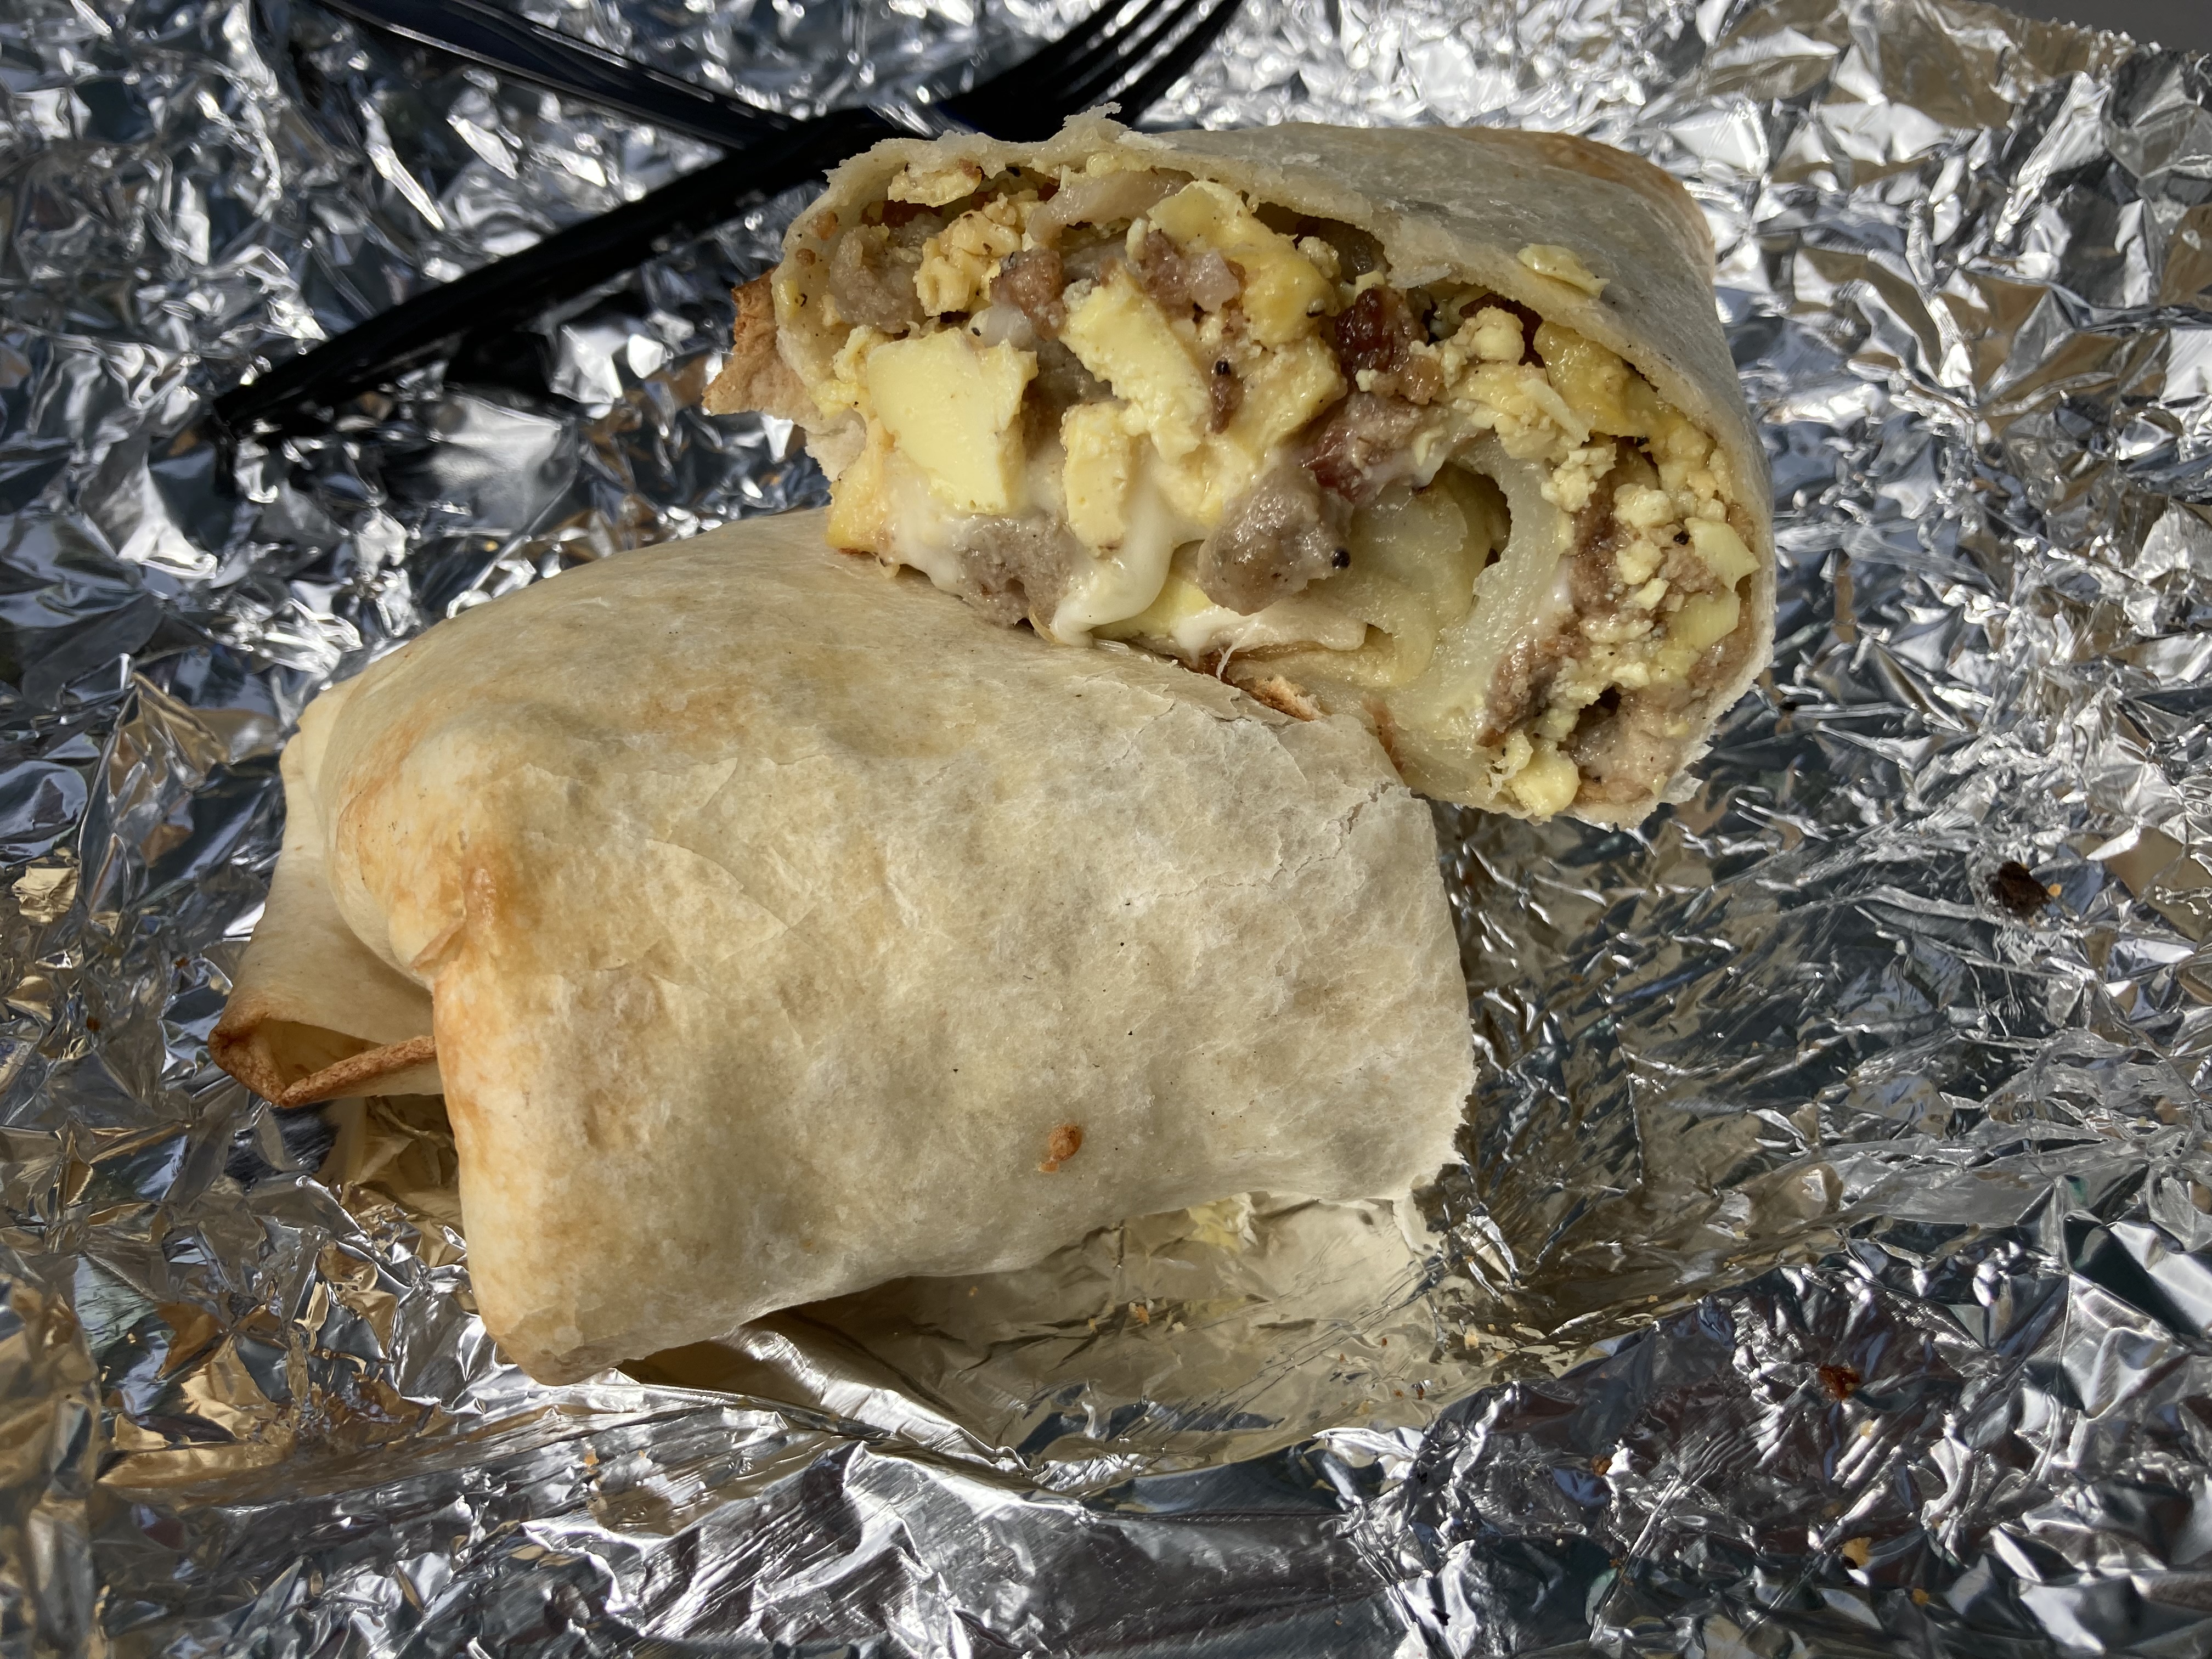 The breakfast burrito at Bosco's along Restaurant Row.